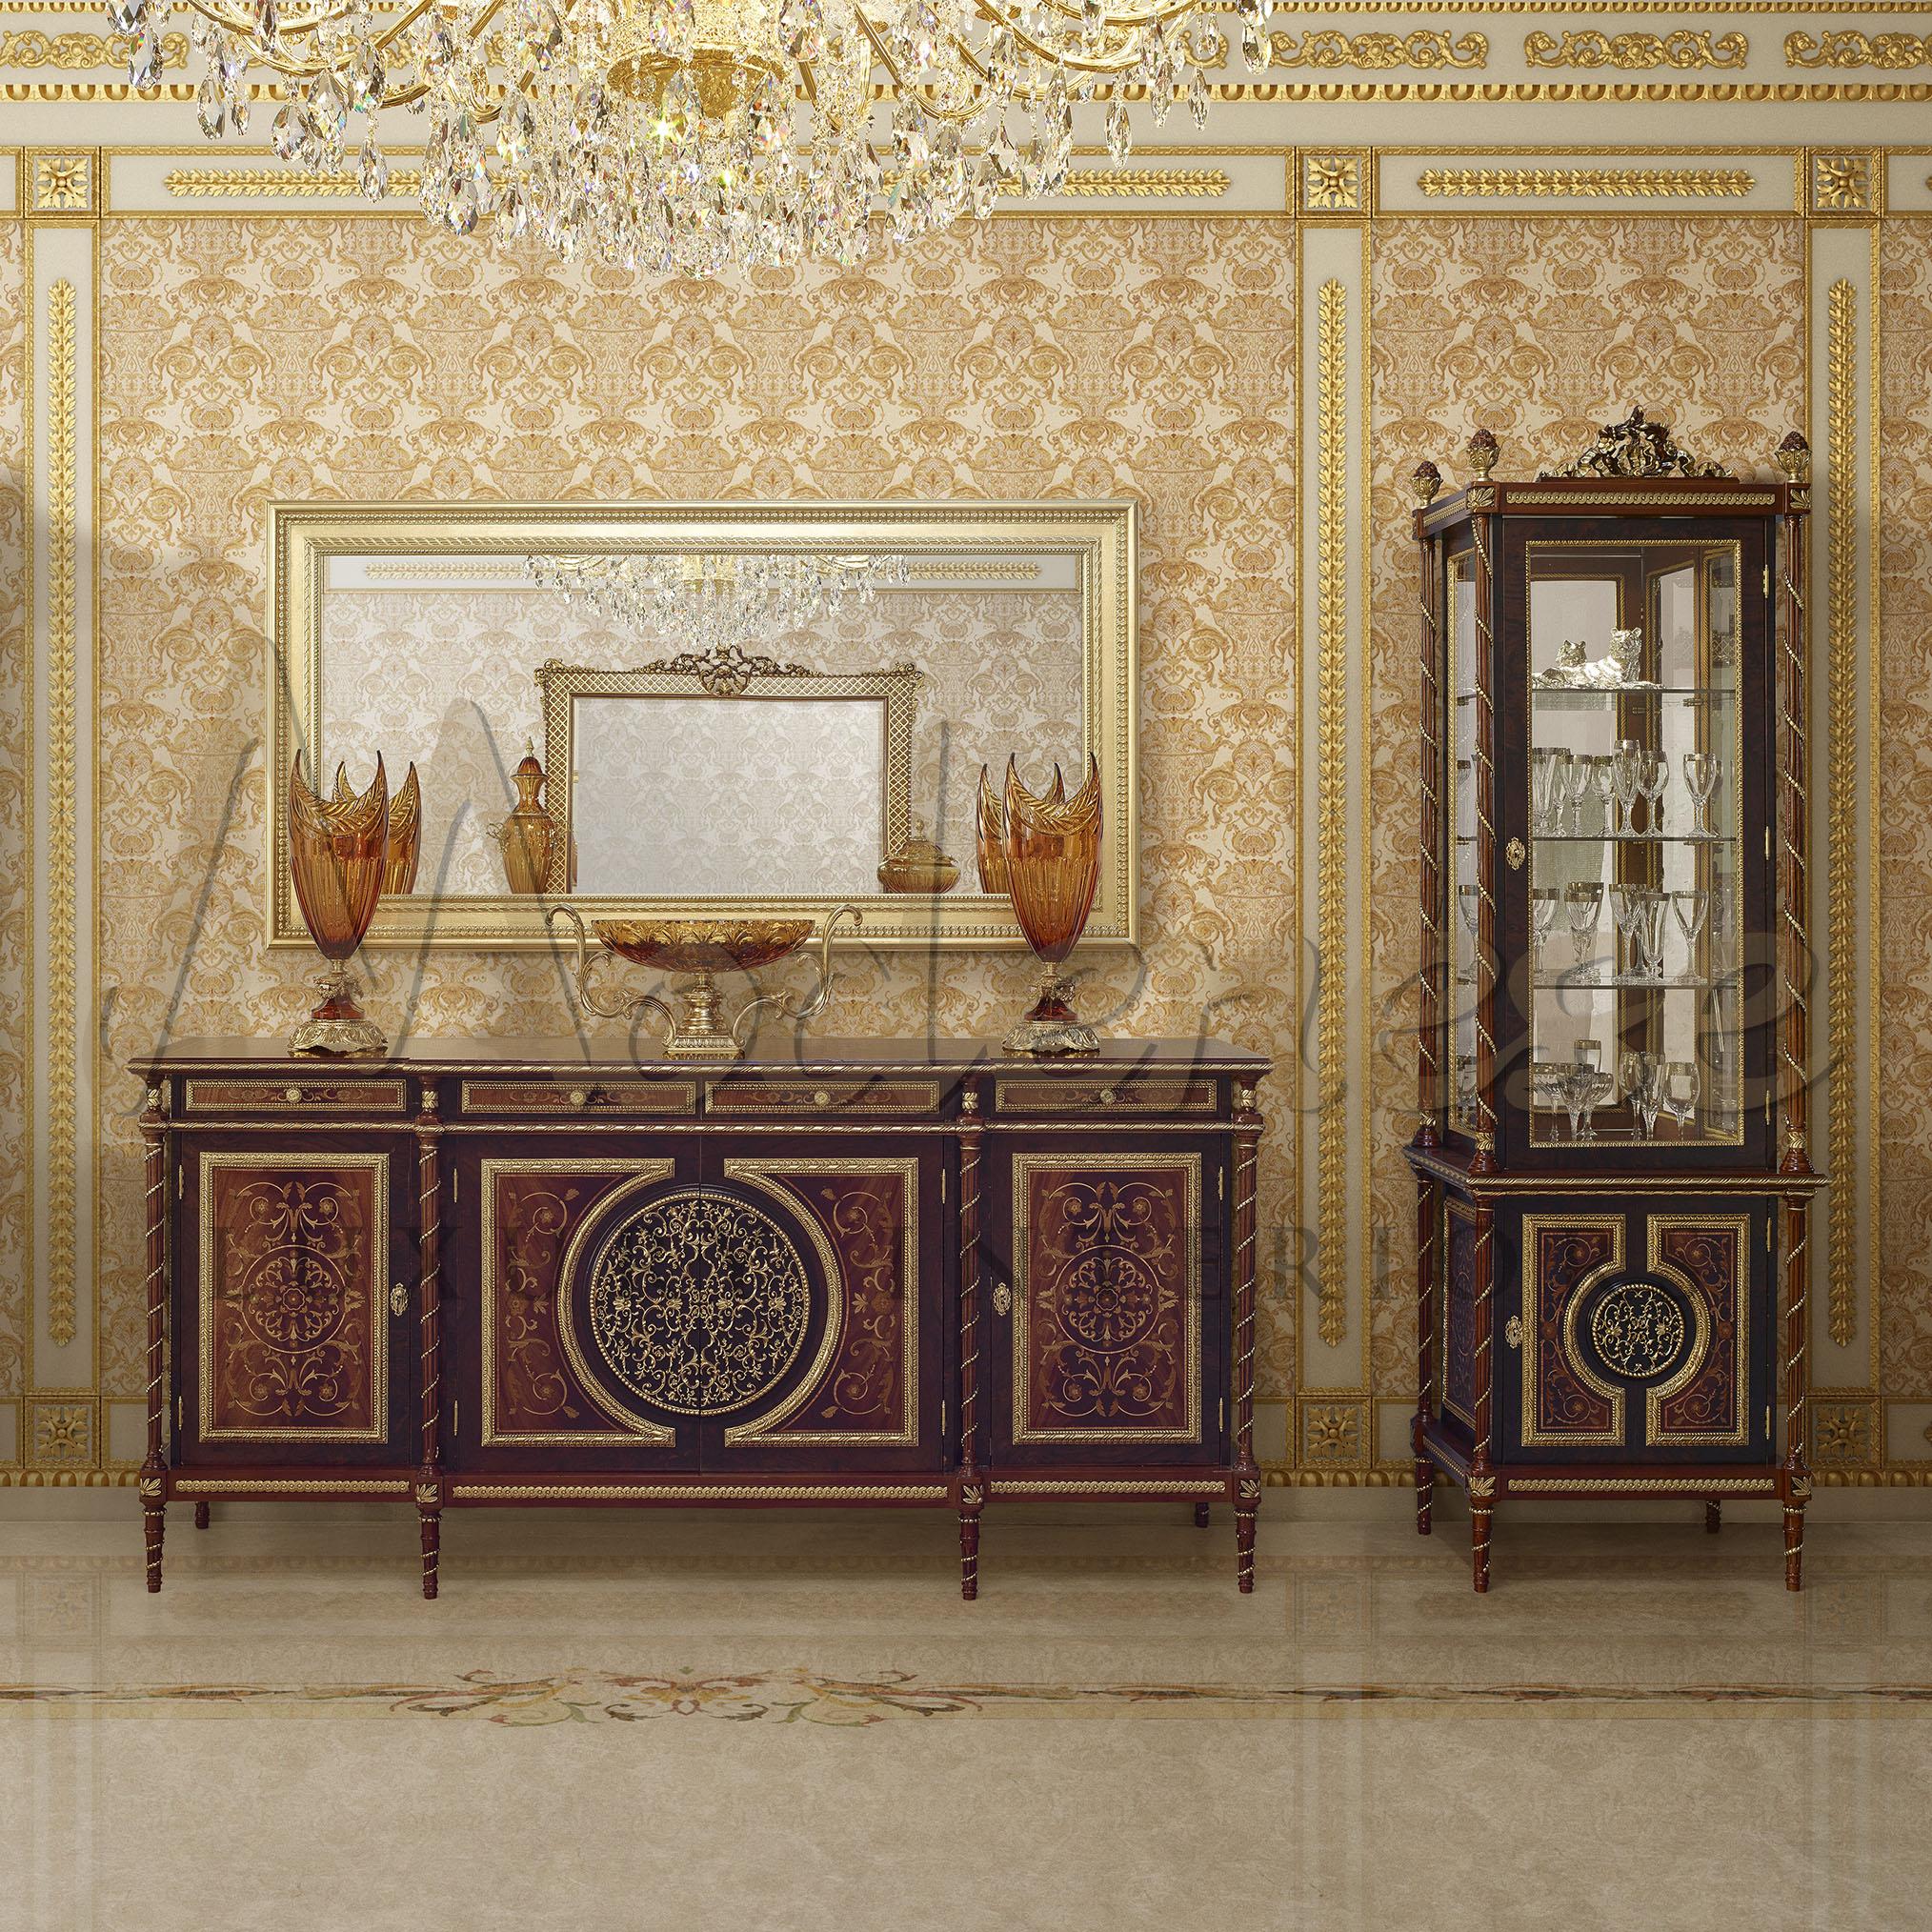 Verwandeln Sie Ihr Haus mit den Luxusmöbeln von Modenese Gastone in eine luxuriöse Privatresidenz. Fügen Sie diese majestätische, dreiseitige Vitrine im wiederbelebten Empire-Stil mit kostbaren Radica-Einlagen aus verschiedenen Holzarten und